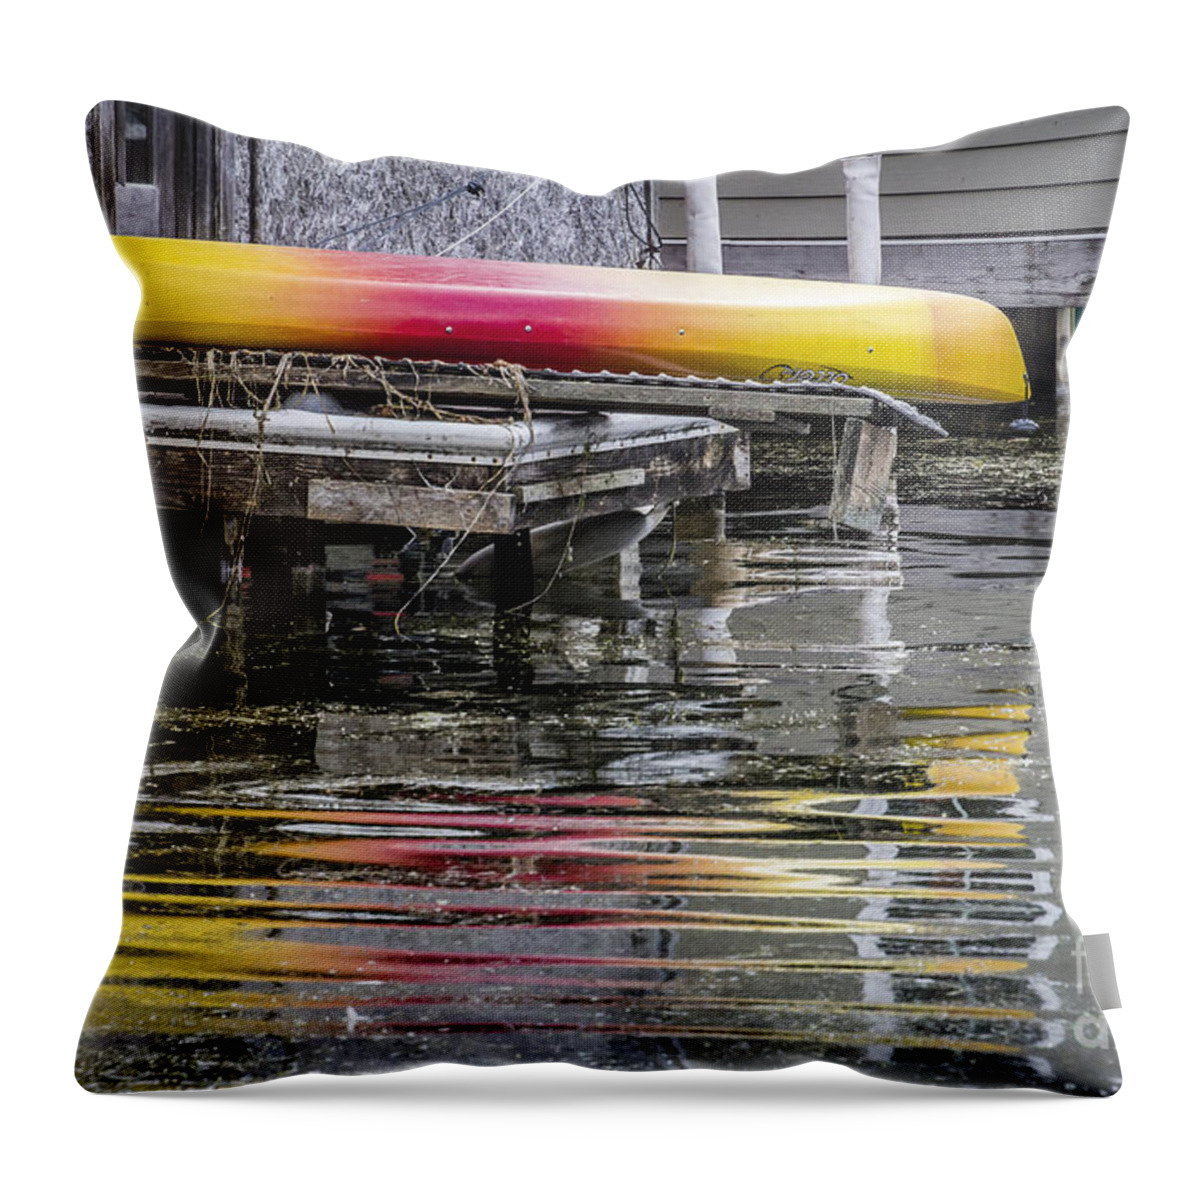 Canoe Throw Pillow featuring the photograph Rainbow Canoe by Joann Long